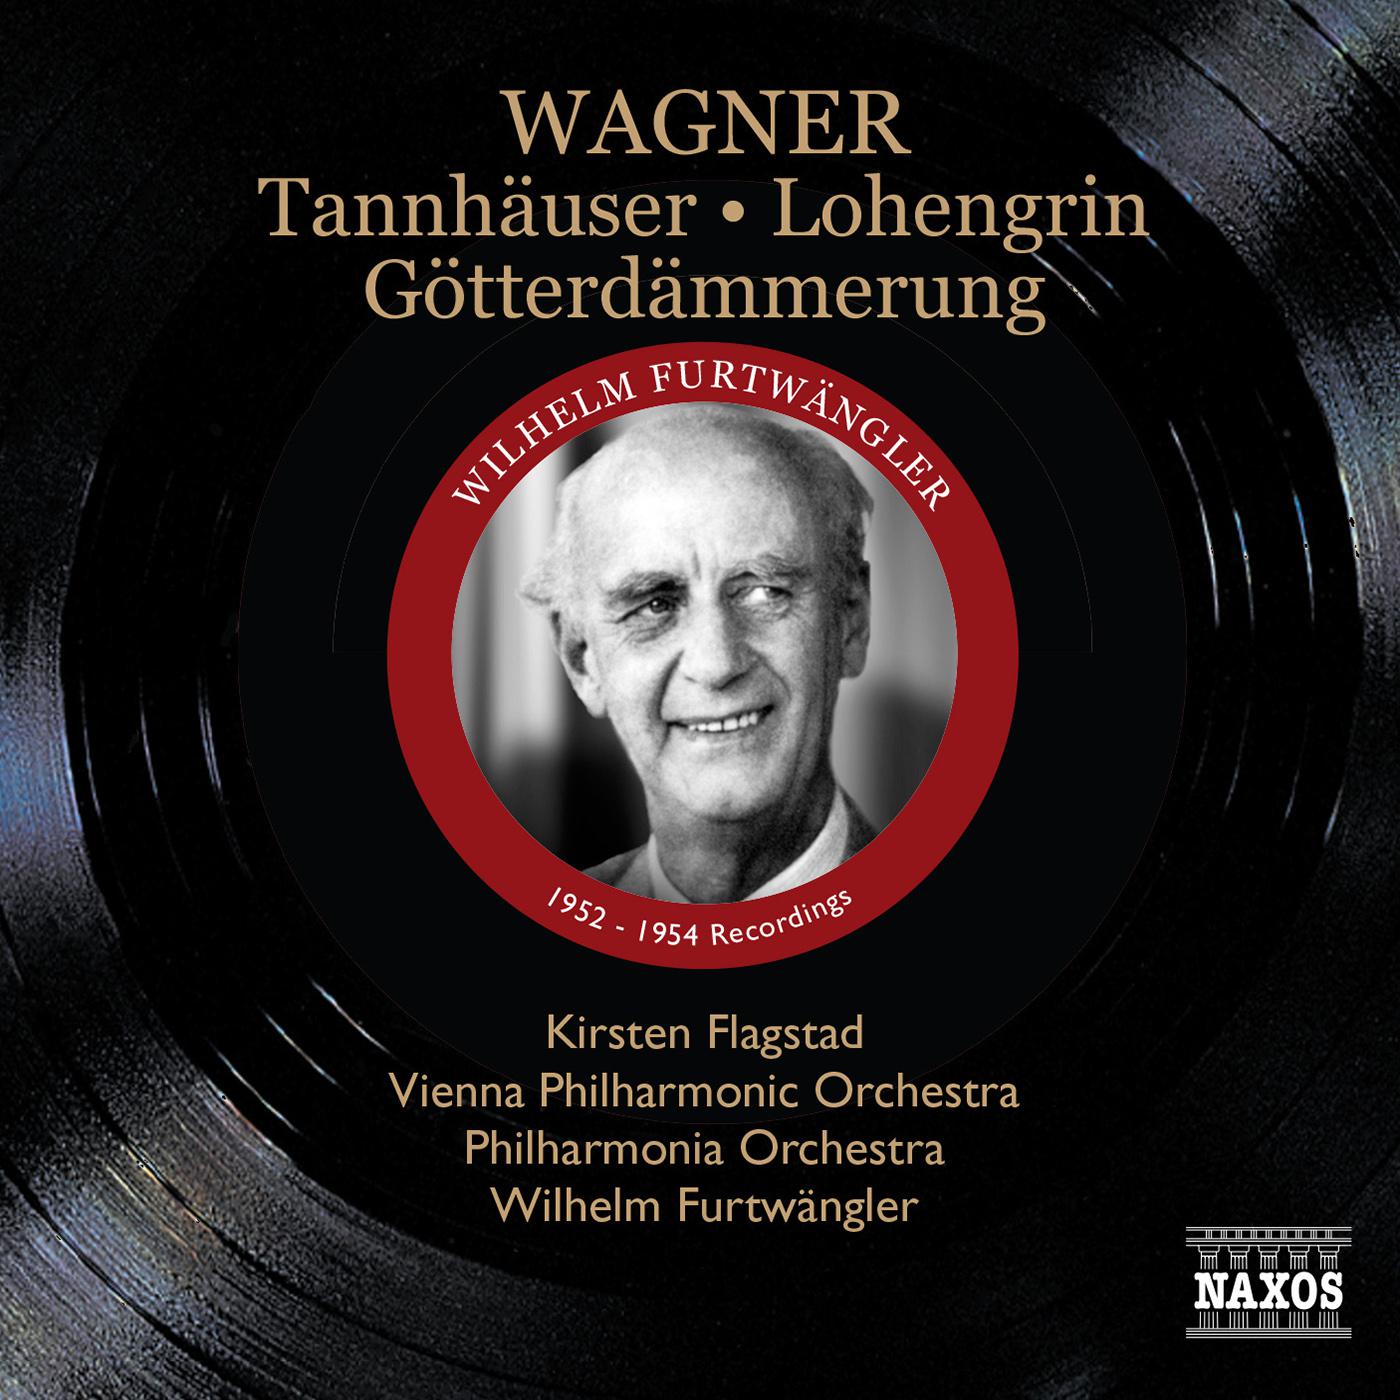 WAGNER, R.: Tannhauser / Lohengrin / Gotterdammerung (orchestral highlights) (Furtwangler) (1952, 1954)